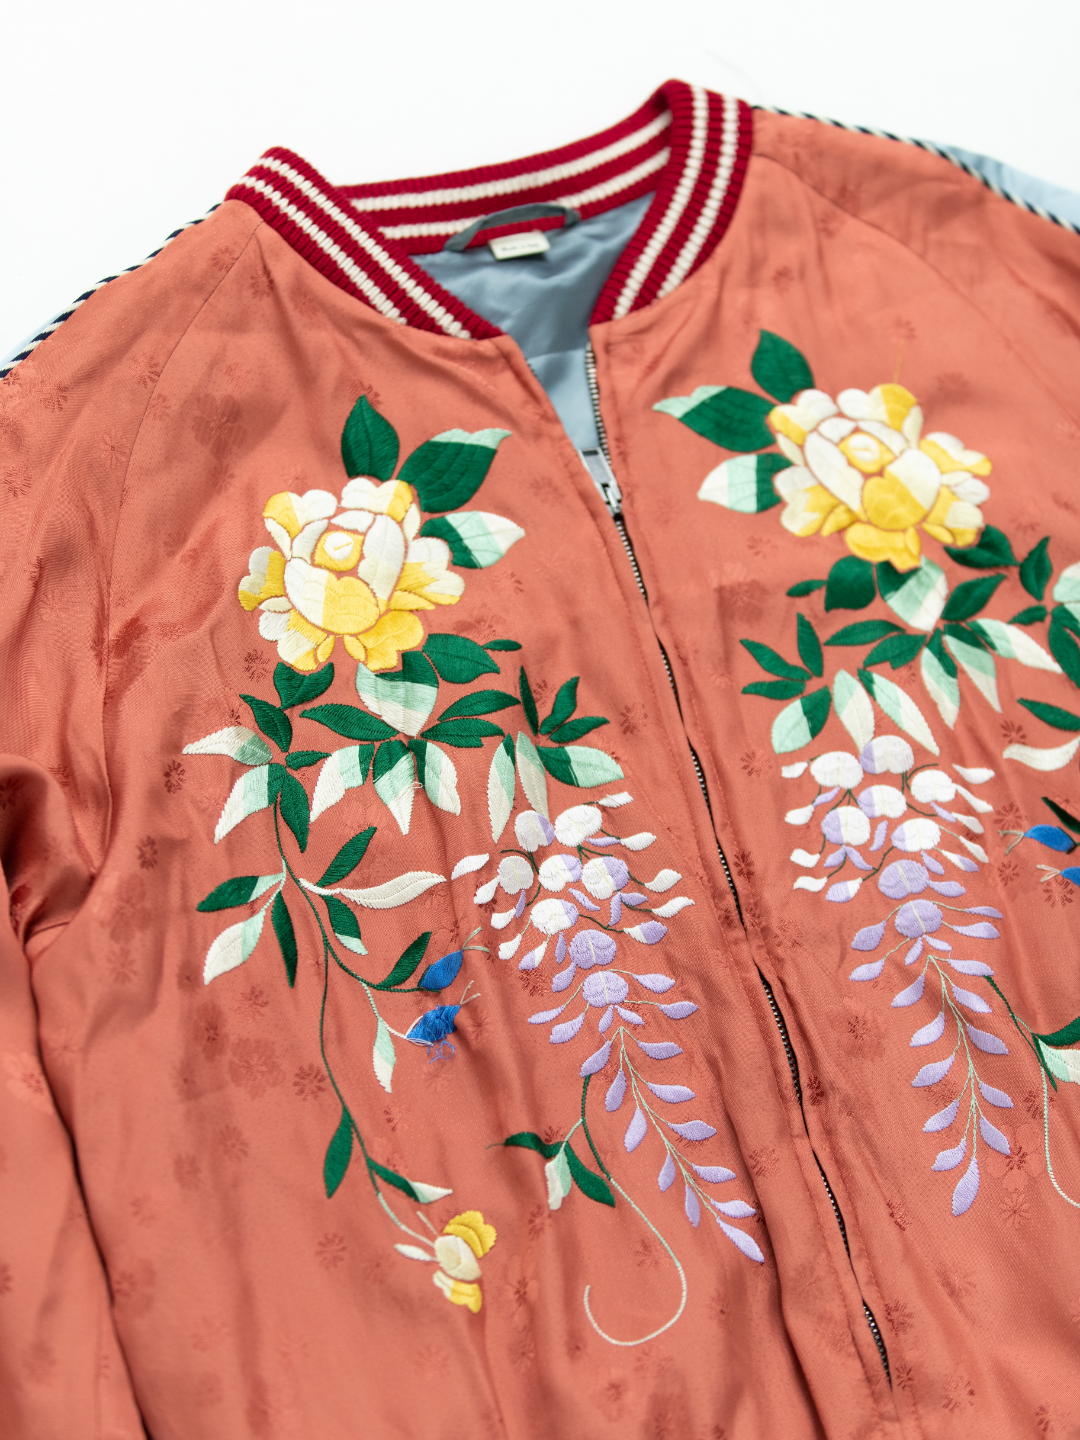 Floral Bomber Jacket